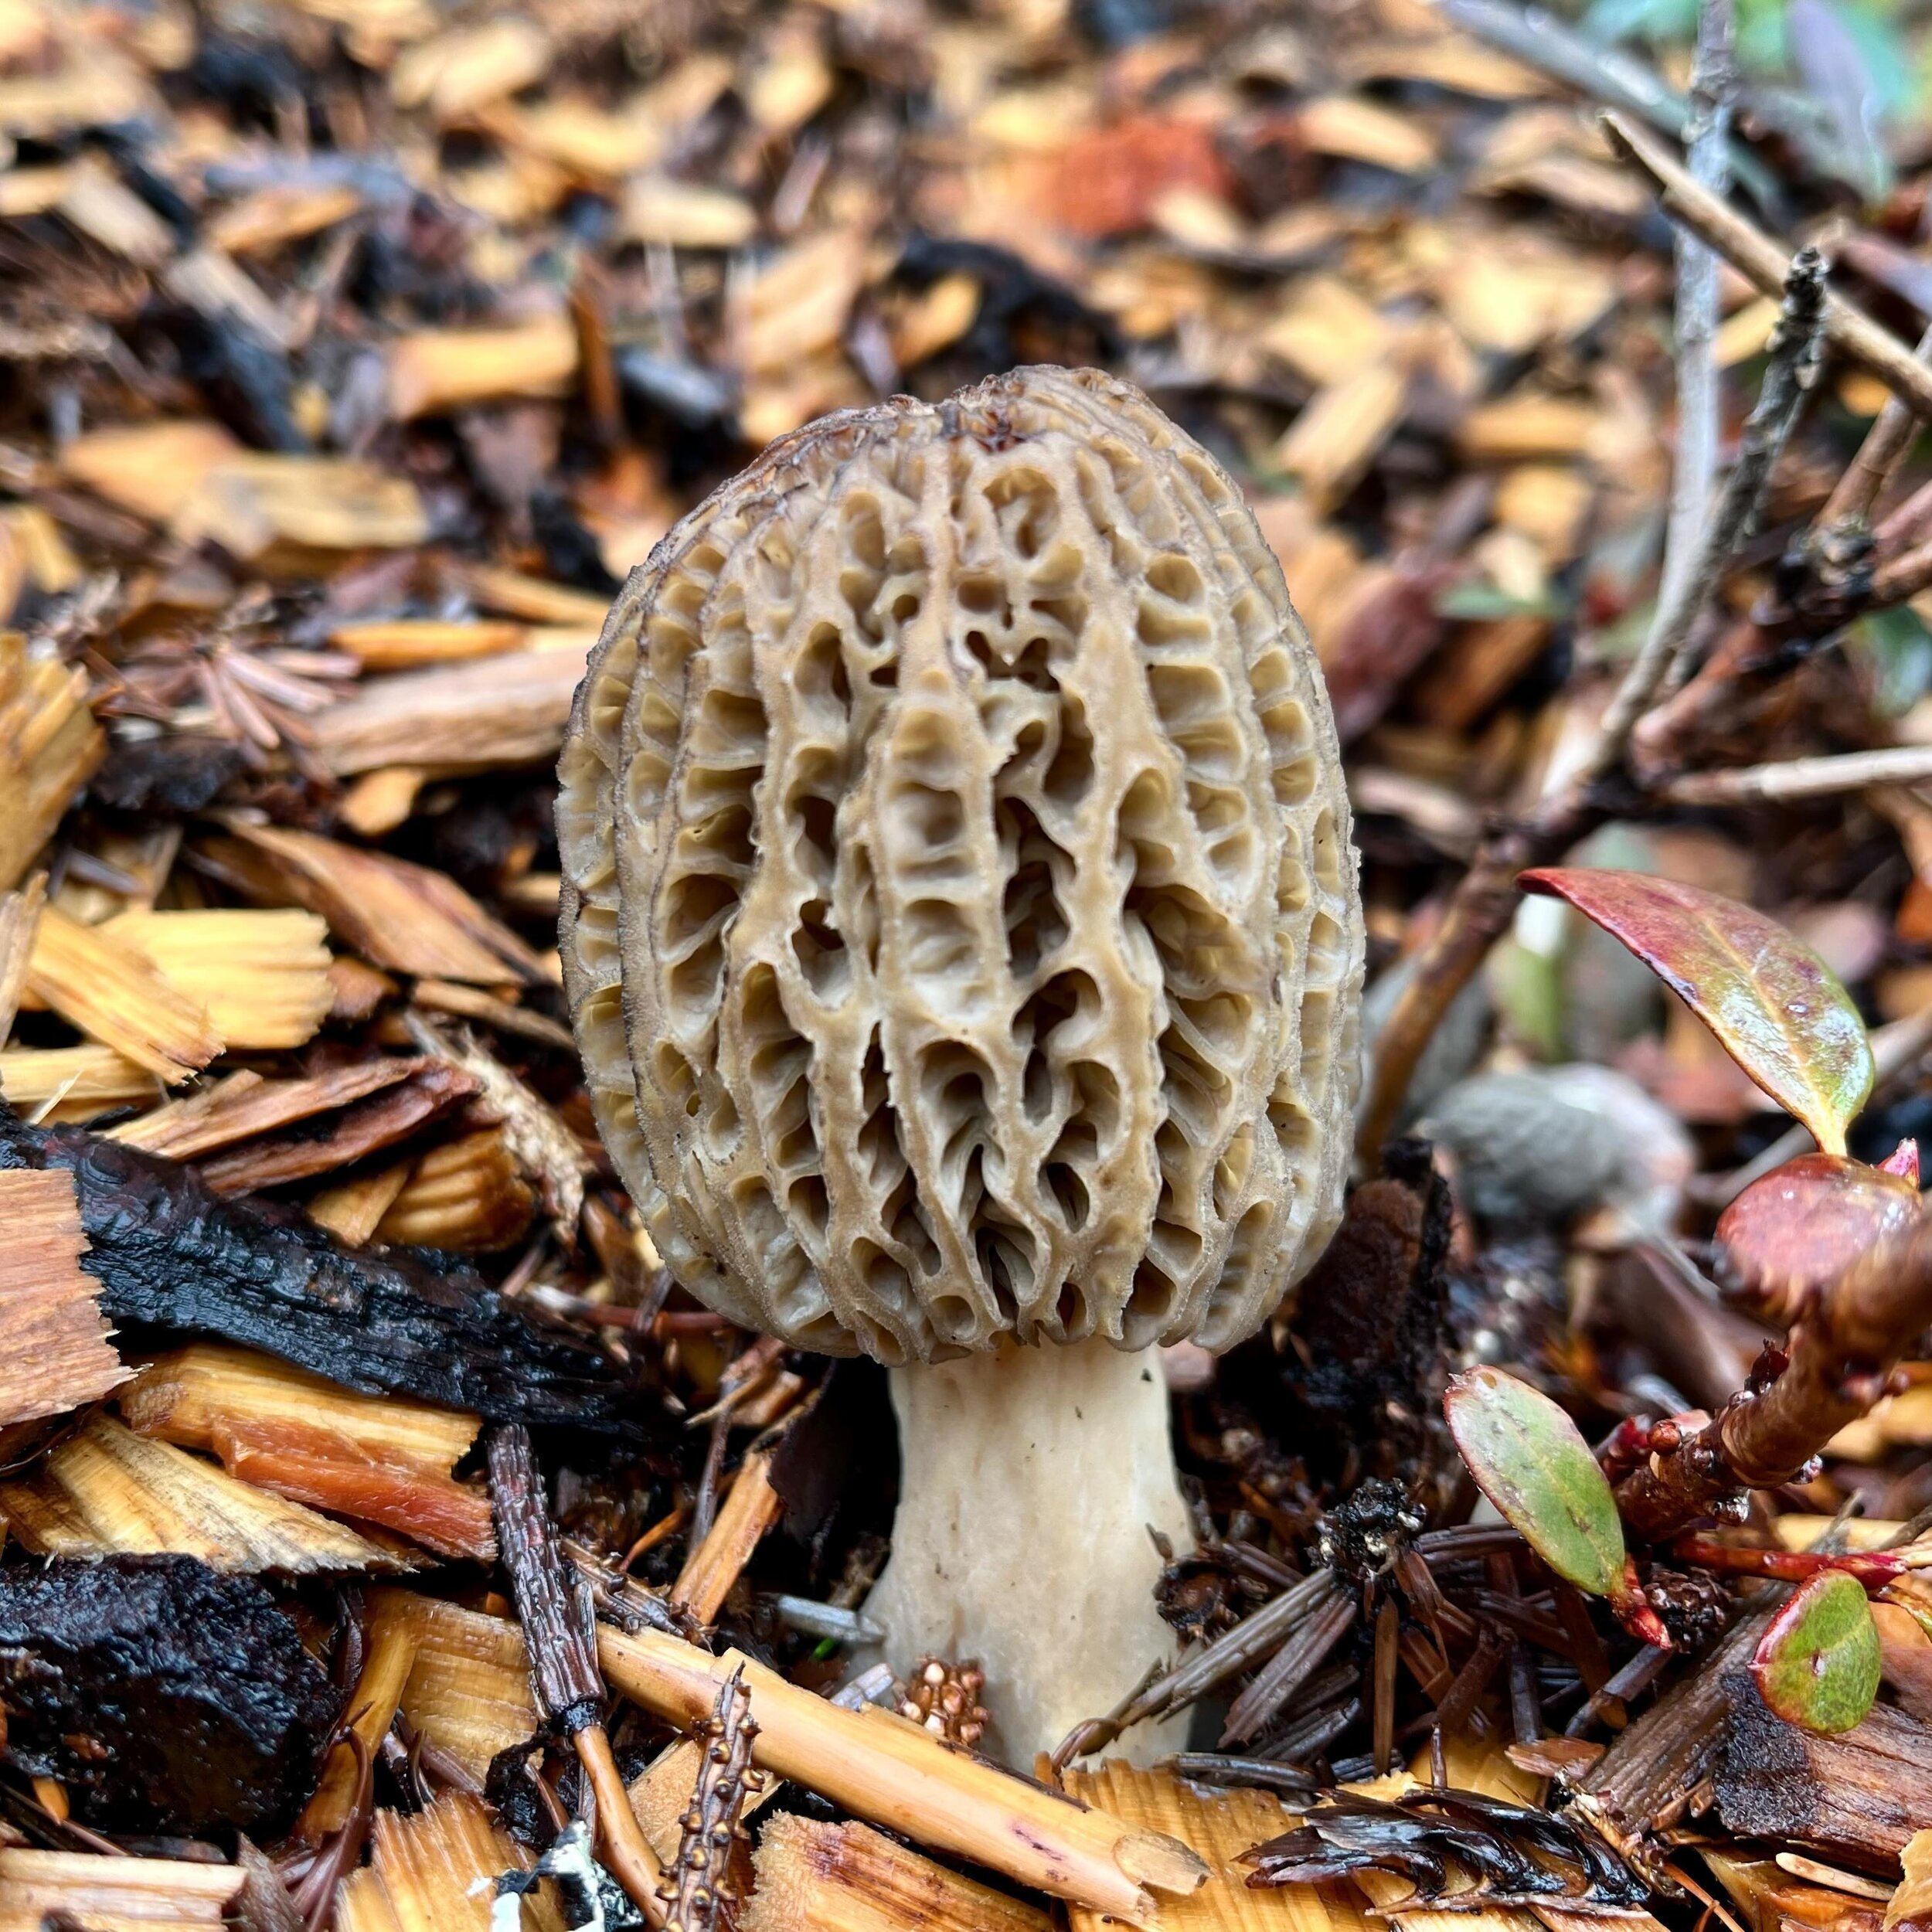 Morel mushroom.

#pnw #forestgarden #morel #morelmushrooms #mushrooms #spring #rain #woodchips #fungi